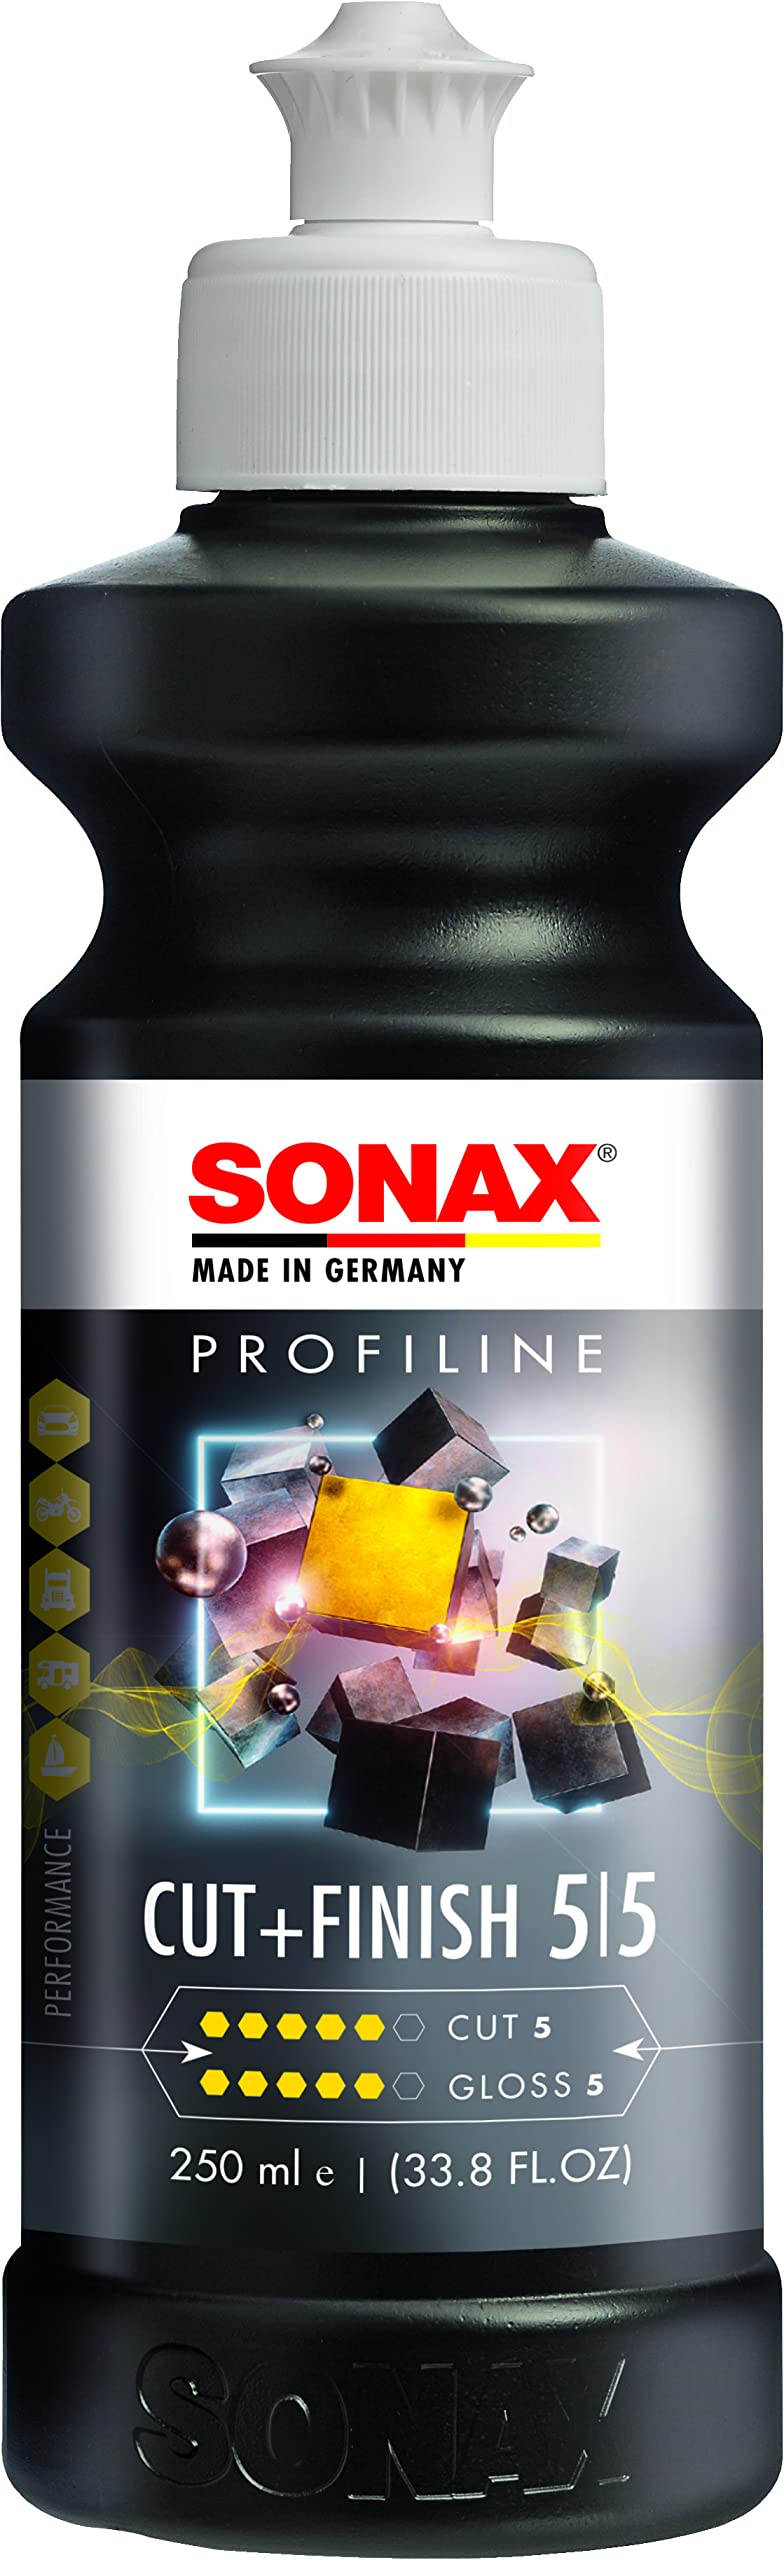 SONAX PROFILINE Cut+Finish (250 ml) Einstufenpolitur mit Glanzfinish für mittlere Verkratzungszustände, Art-Nr. 02251410 von SONAX